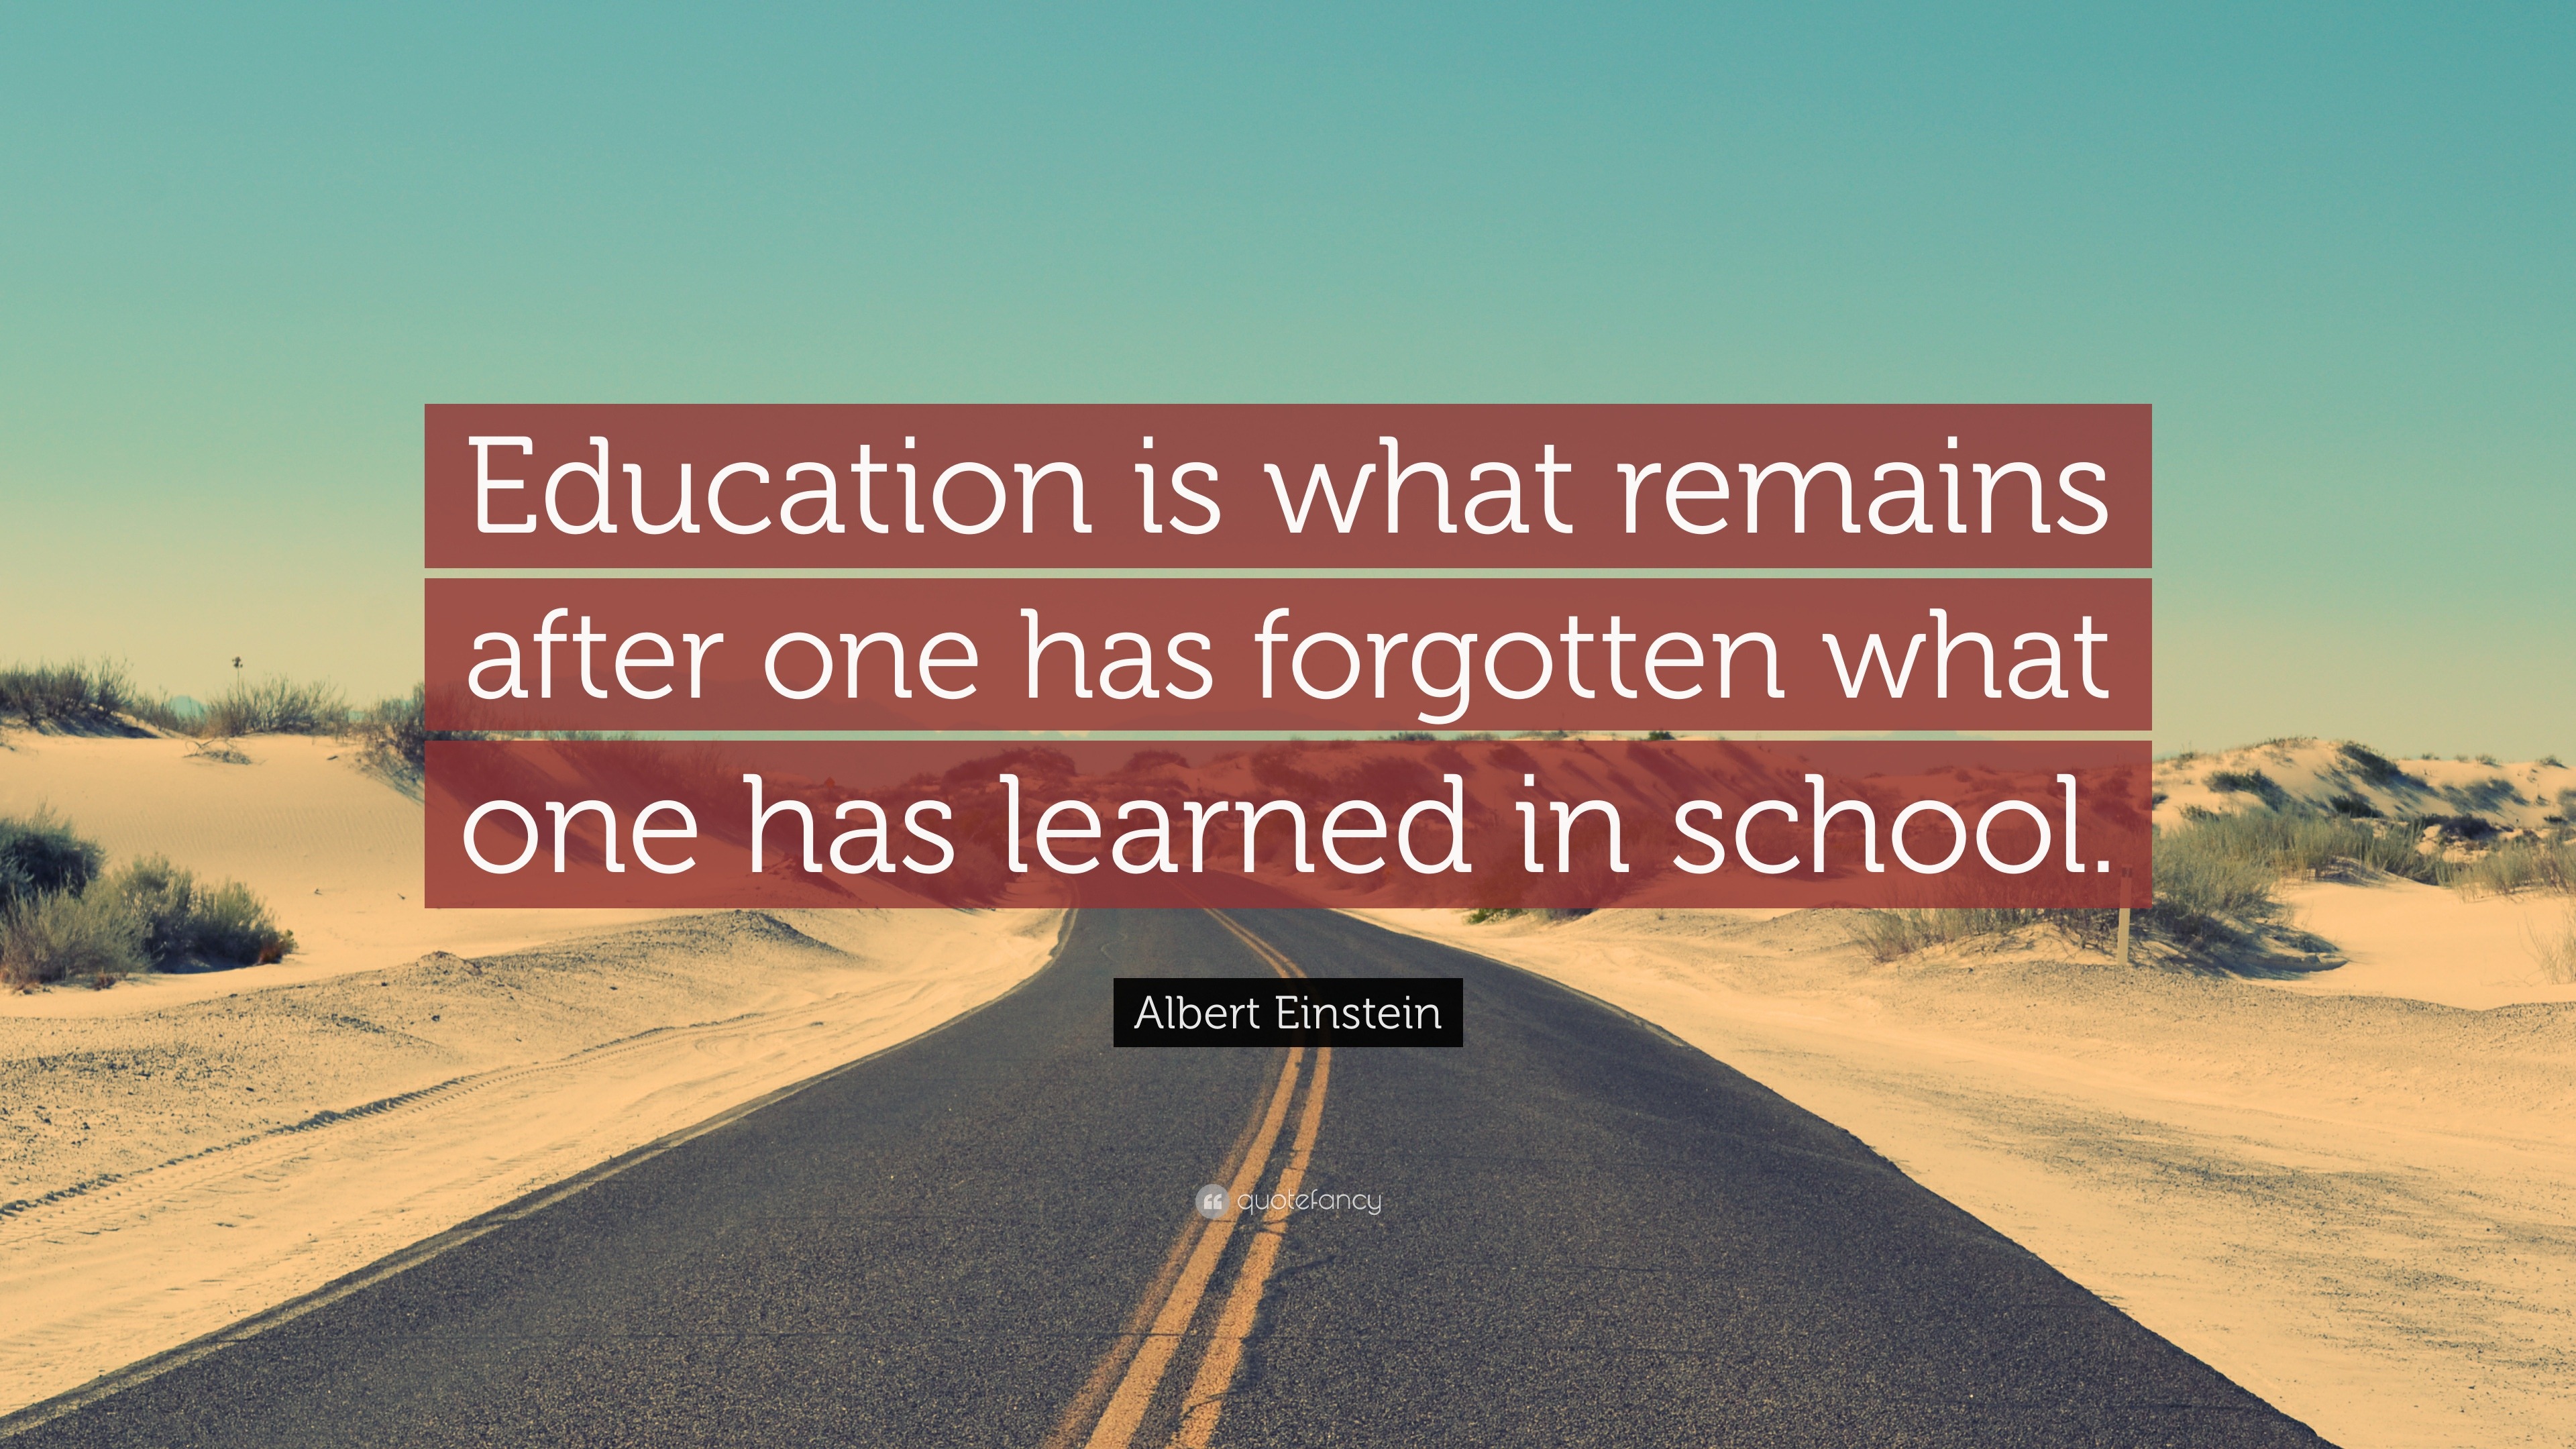 Albert Einstein Quotes About Education